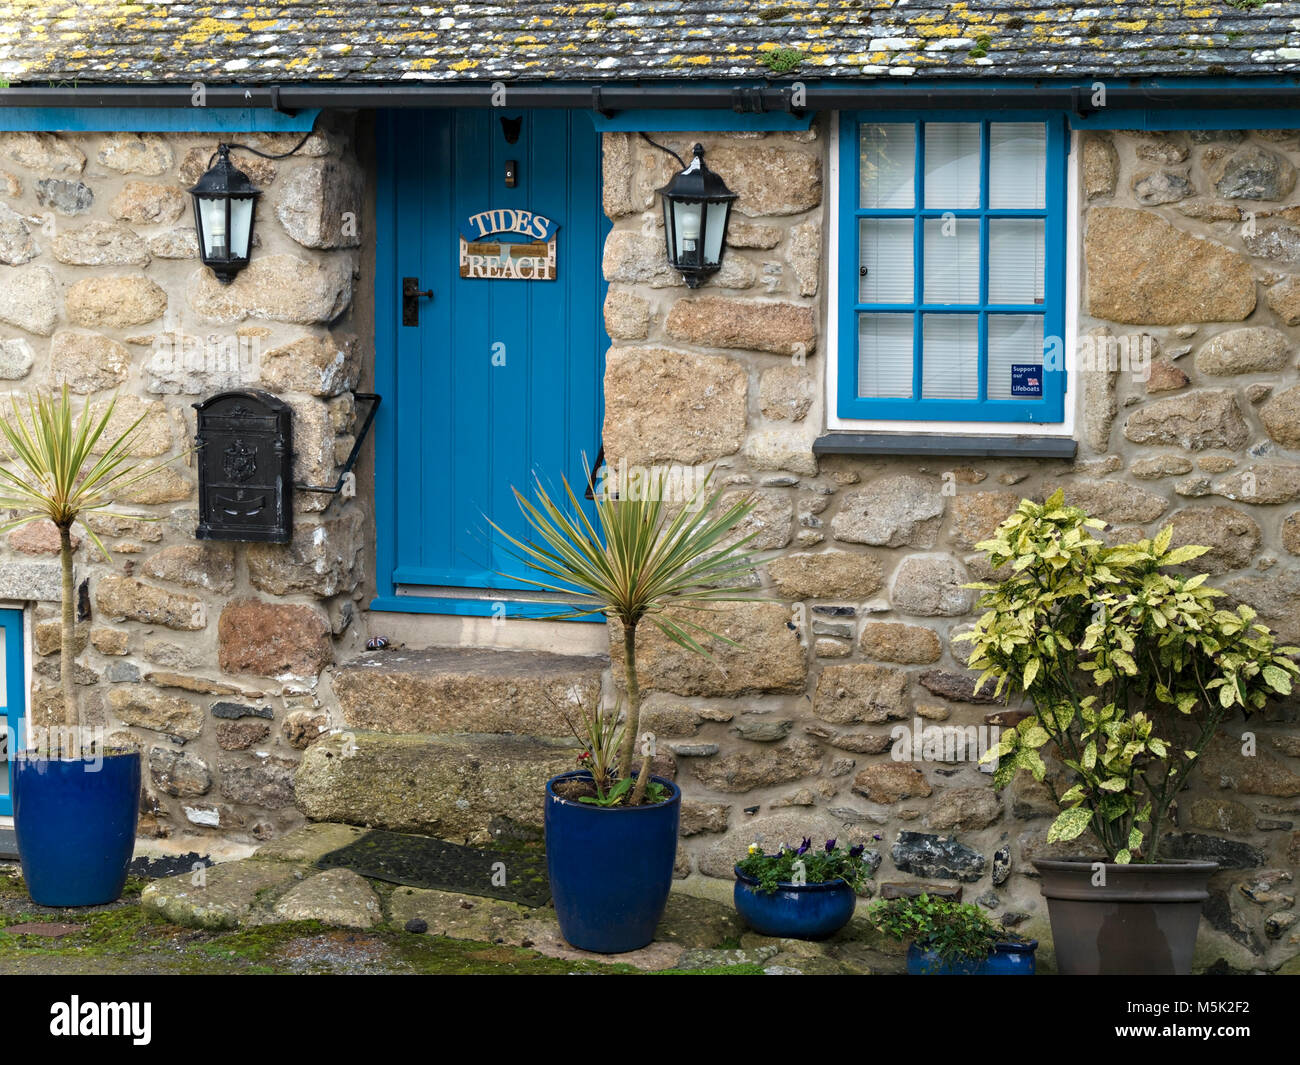 Bastante vieja piedra de granito de Cornualles Fisherman's Cottage llamado 'Tides alcanza' con puerta frontal azul, Mousehole, Cornwall, Inglaterra, Reino Unido. Foto de stock